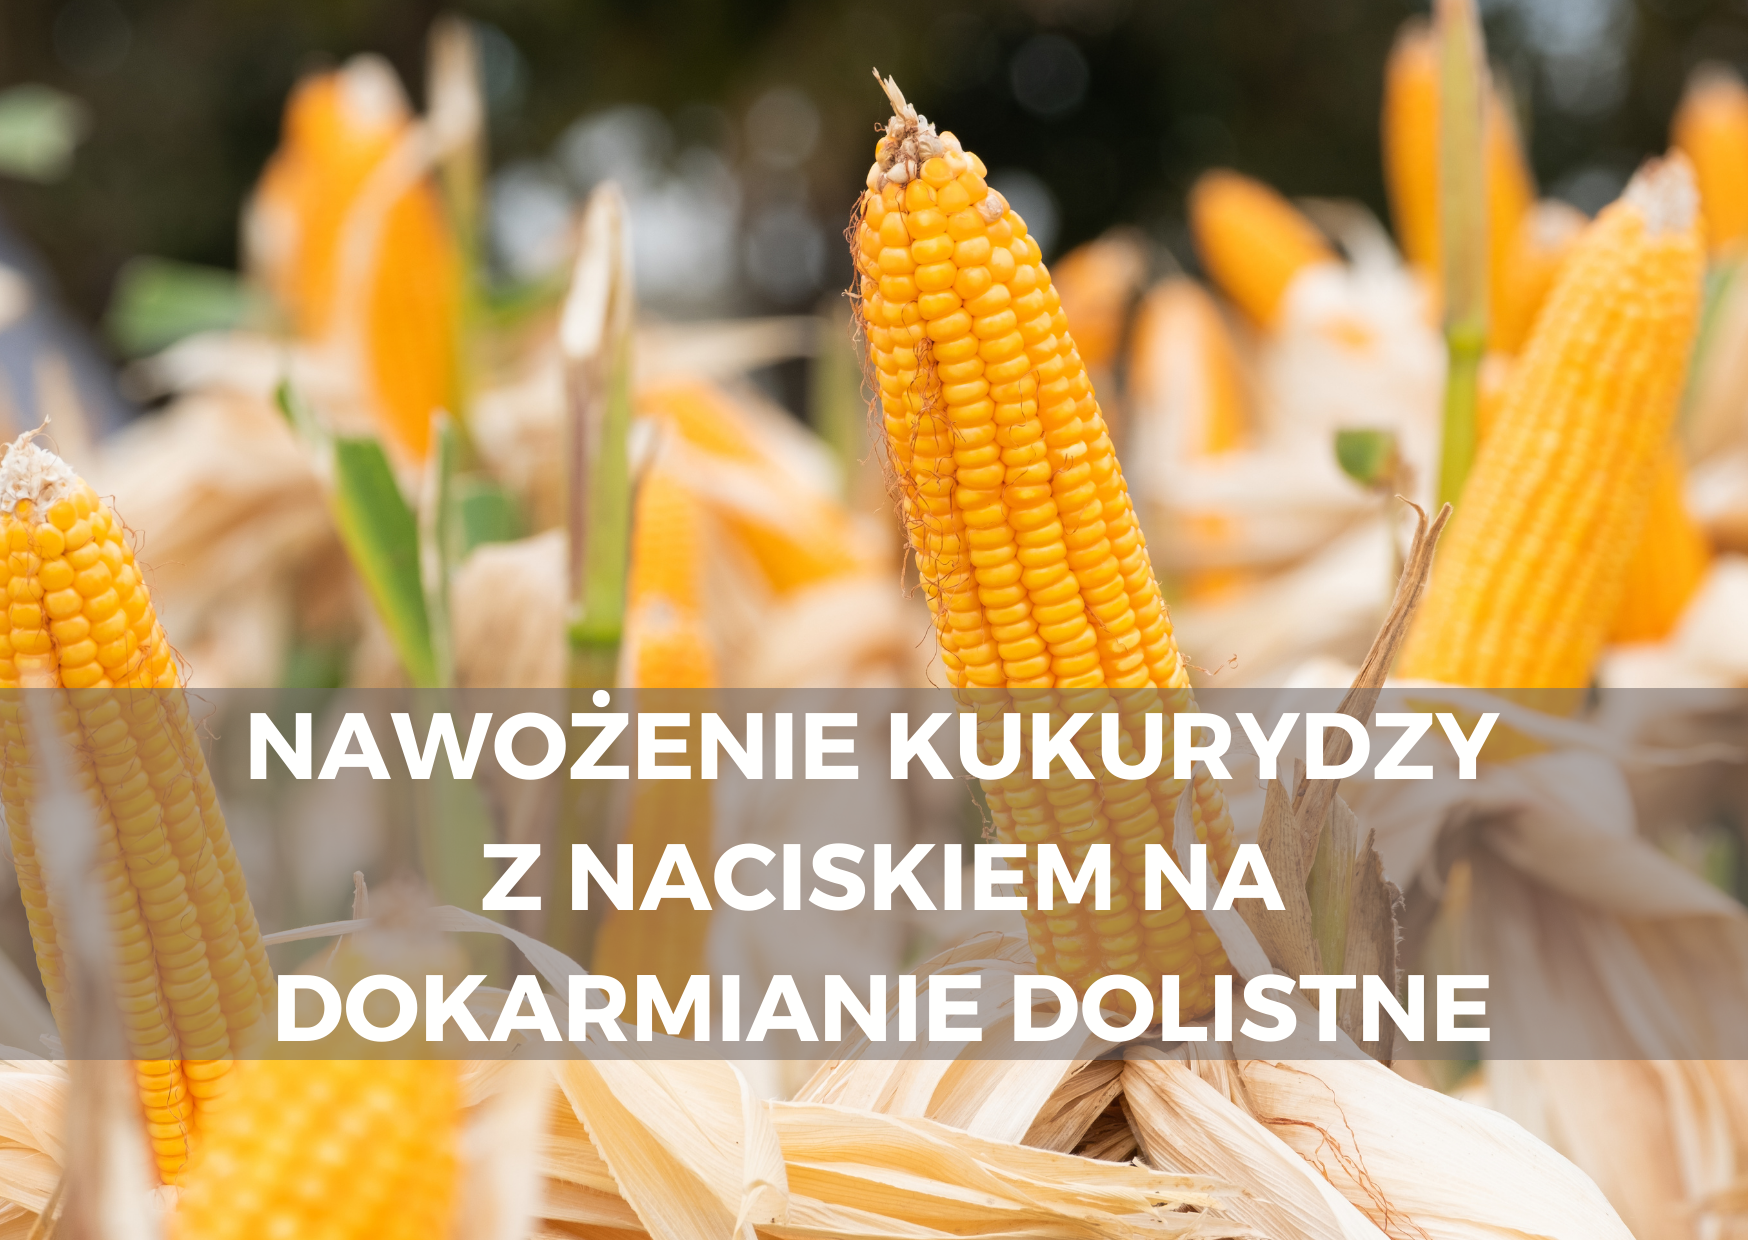 Dokarmianie dolistne kukurydzy